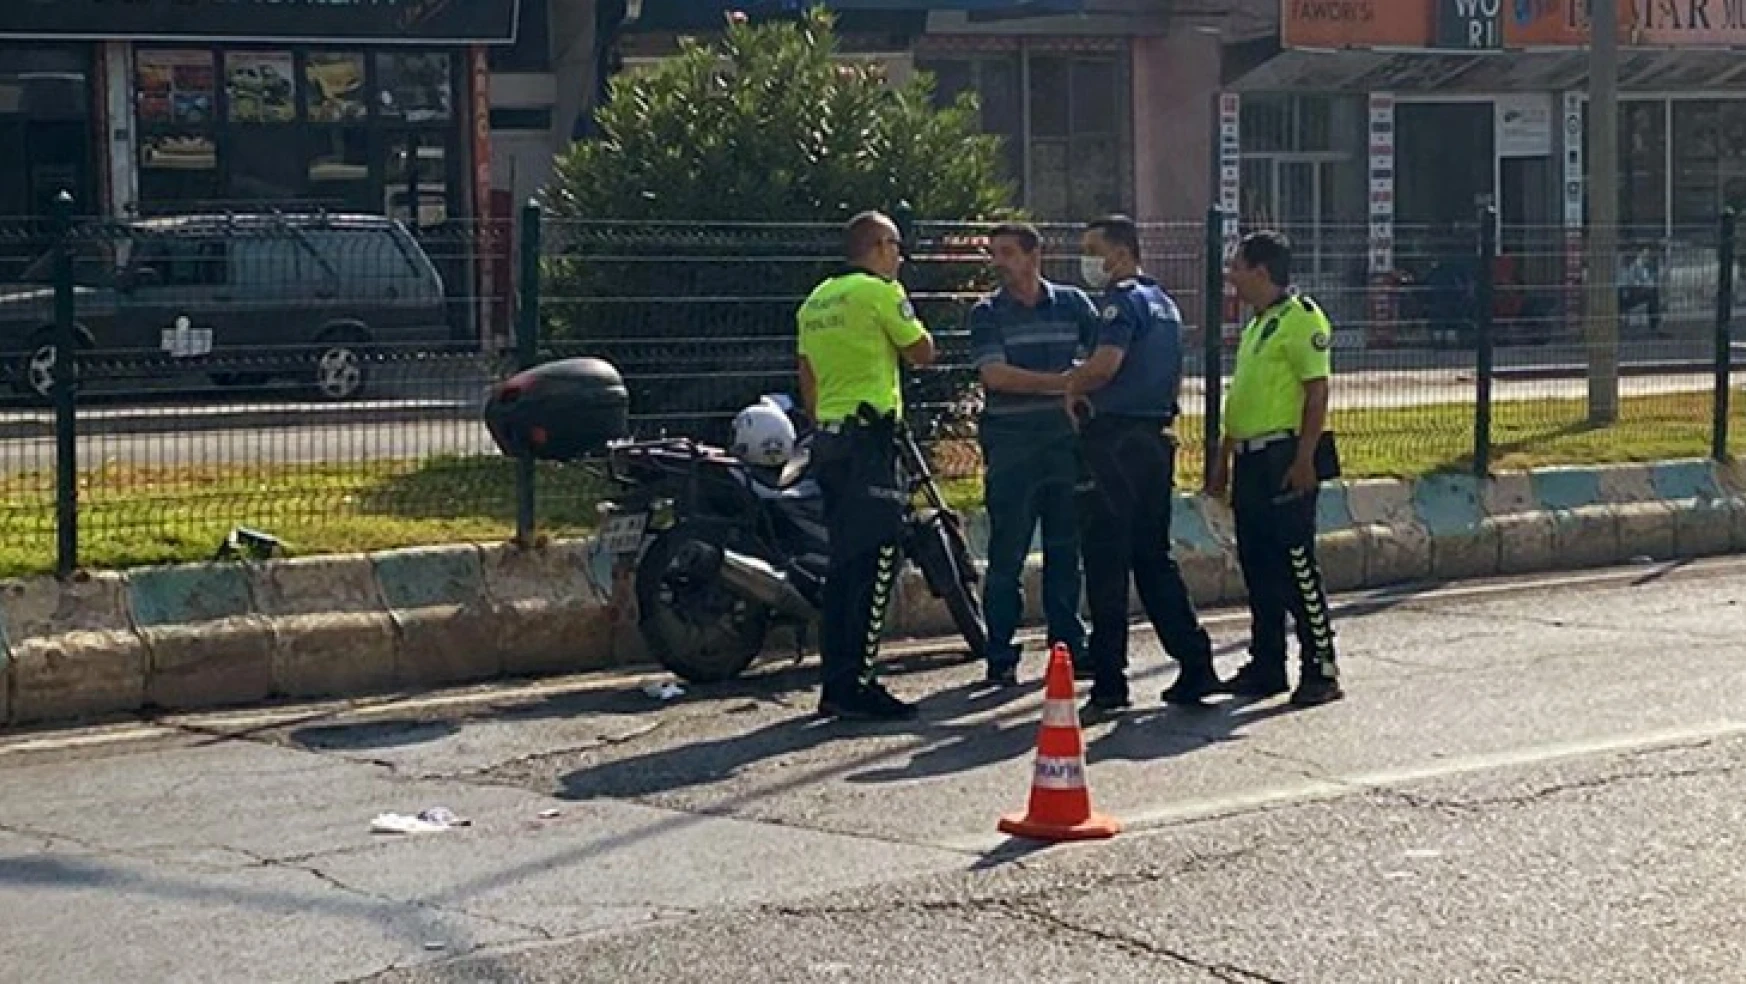 Kahramanmaraş'ta meydana gelen motosiklet kazasında 1 ağır 3 kişi yaralandı